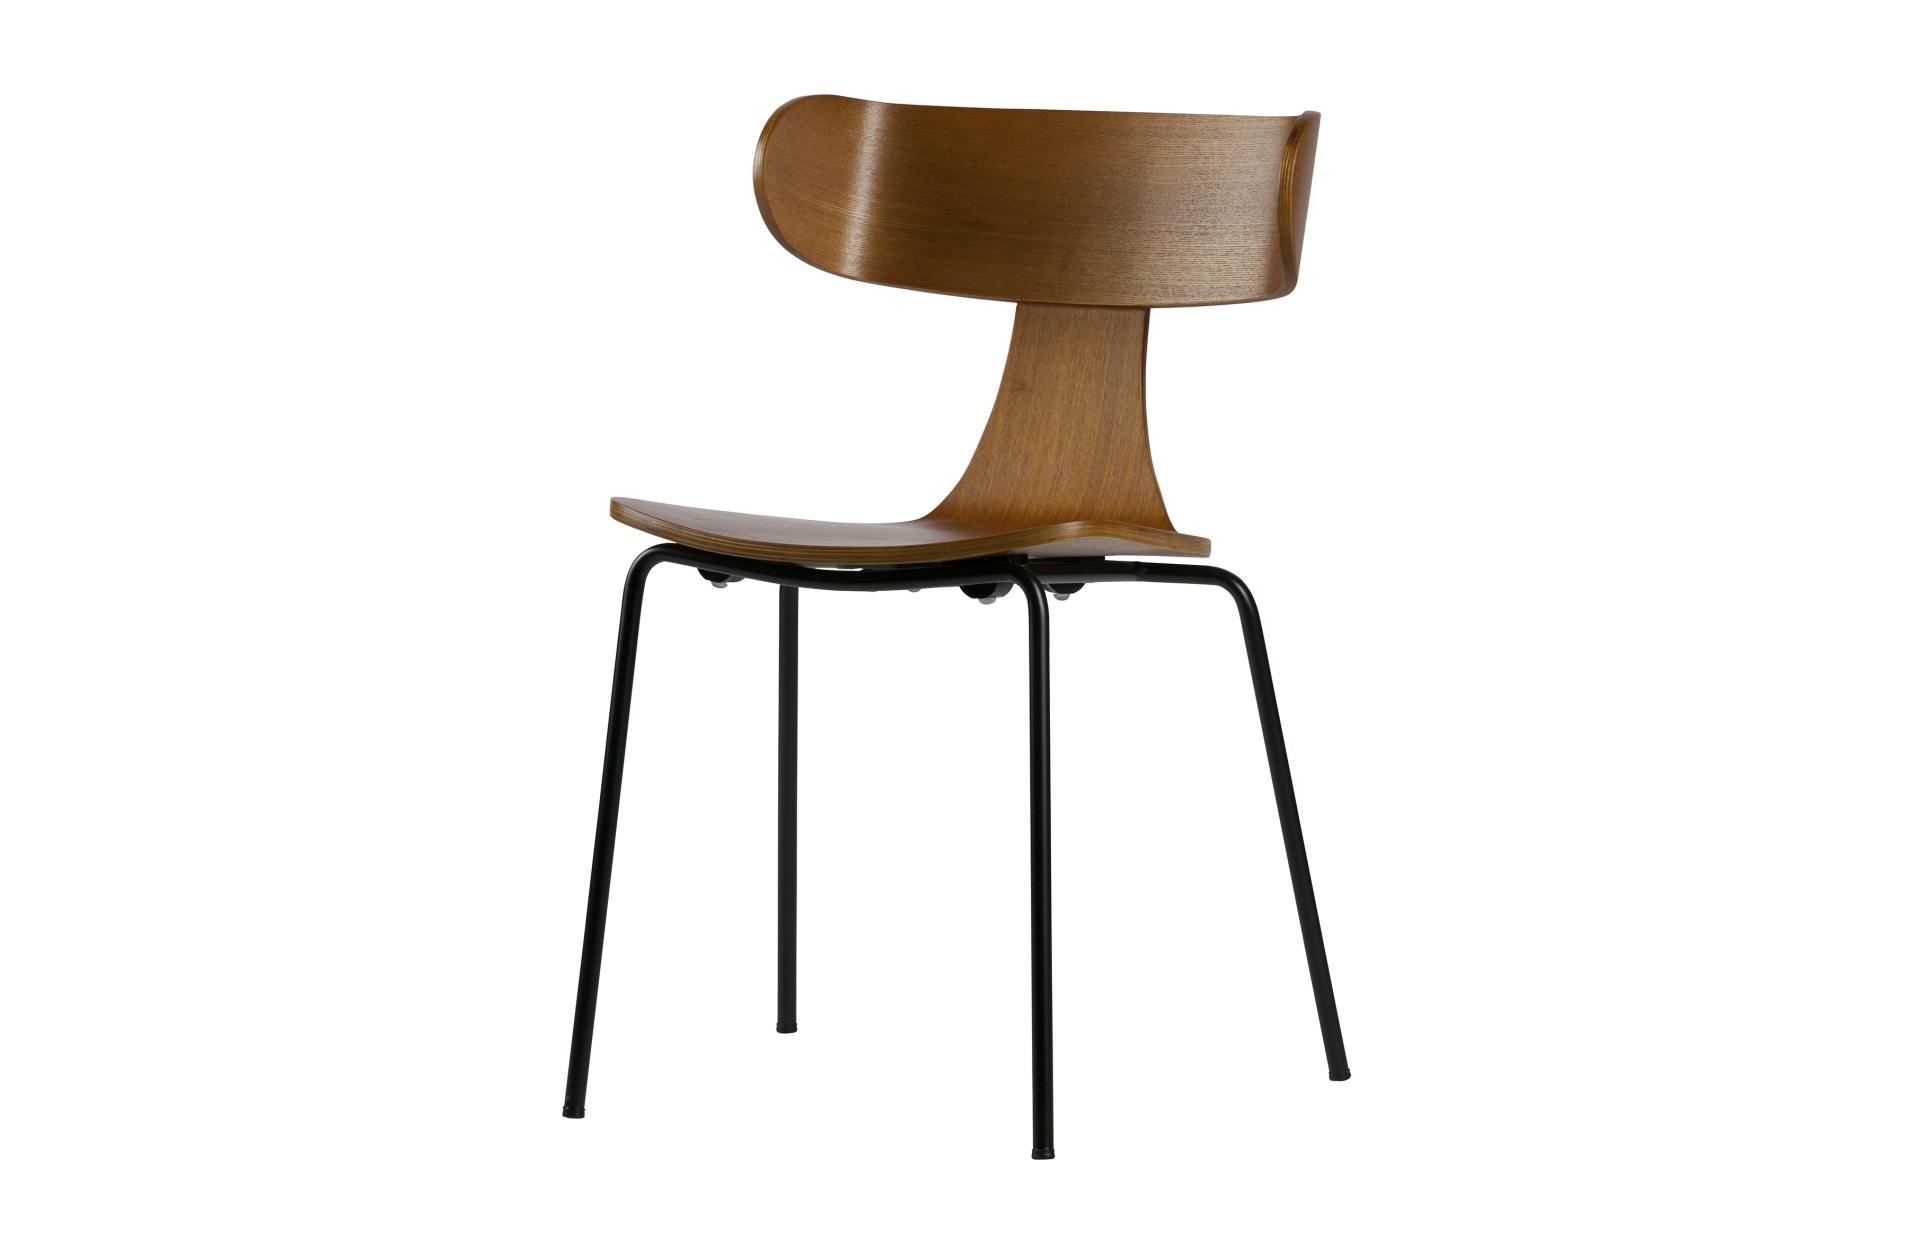 Der Stuhl Form überzeugt mit seinem besonderen Design. Gefertigt wurde der Stuhl aus Holz, welches einen braunen Farbton besitzt. Das Gestell ist schwarz und wurde aus Metall gefertigt.